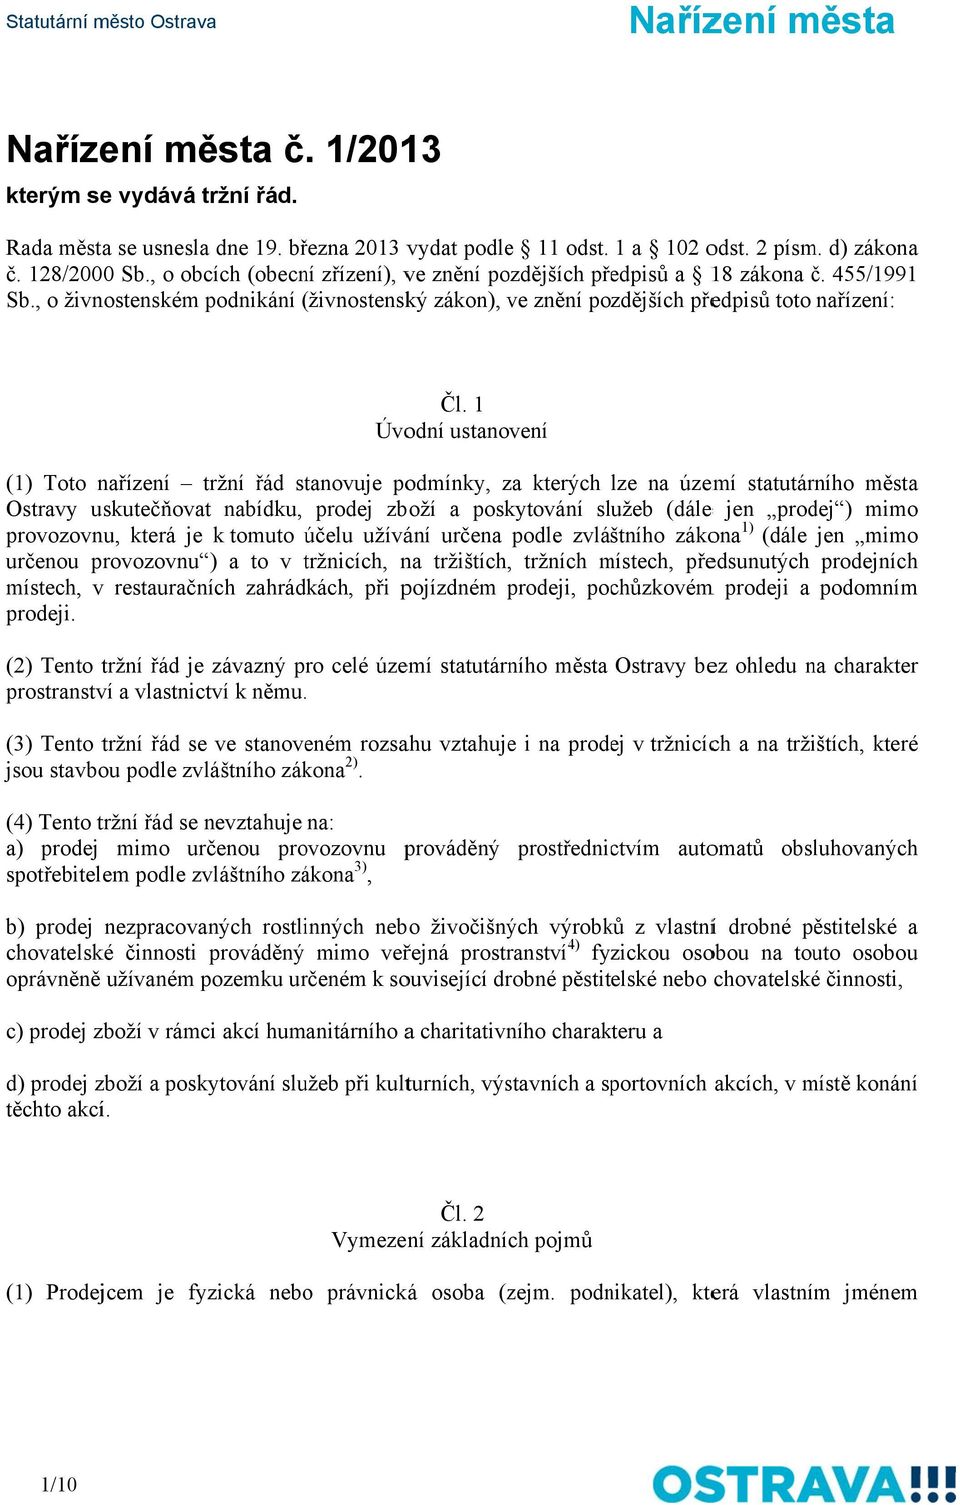 1 Úvodní ustanovení (1) Toto nařízení tržní řád stanovuje podmínky, za kterých lze na území statutárního města Ostravy uskutečňovat nabídku, prodej zboží a poskytování služeb (dále e jen prodej )